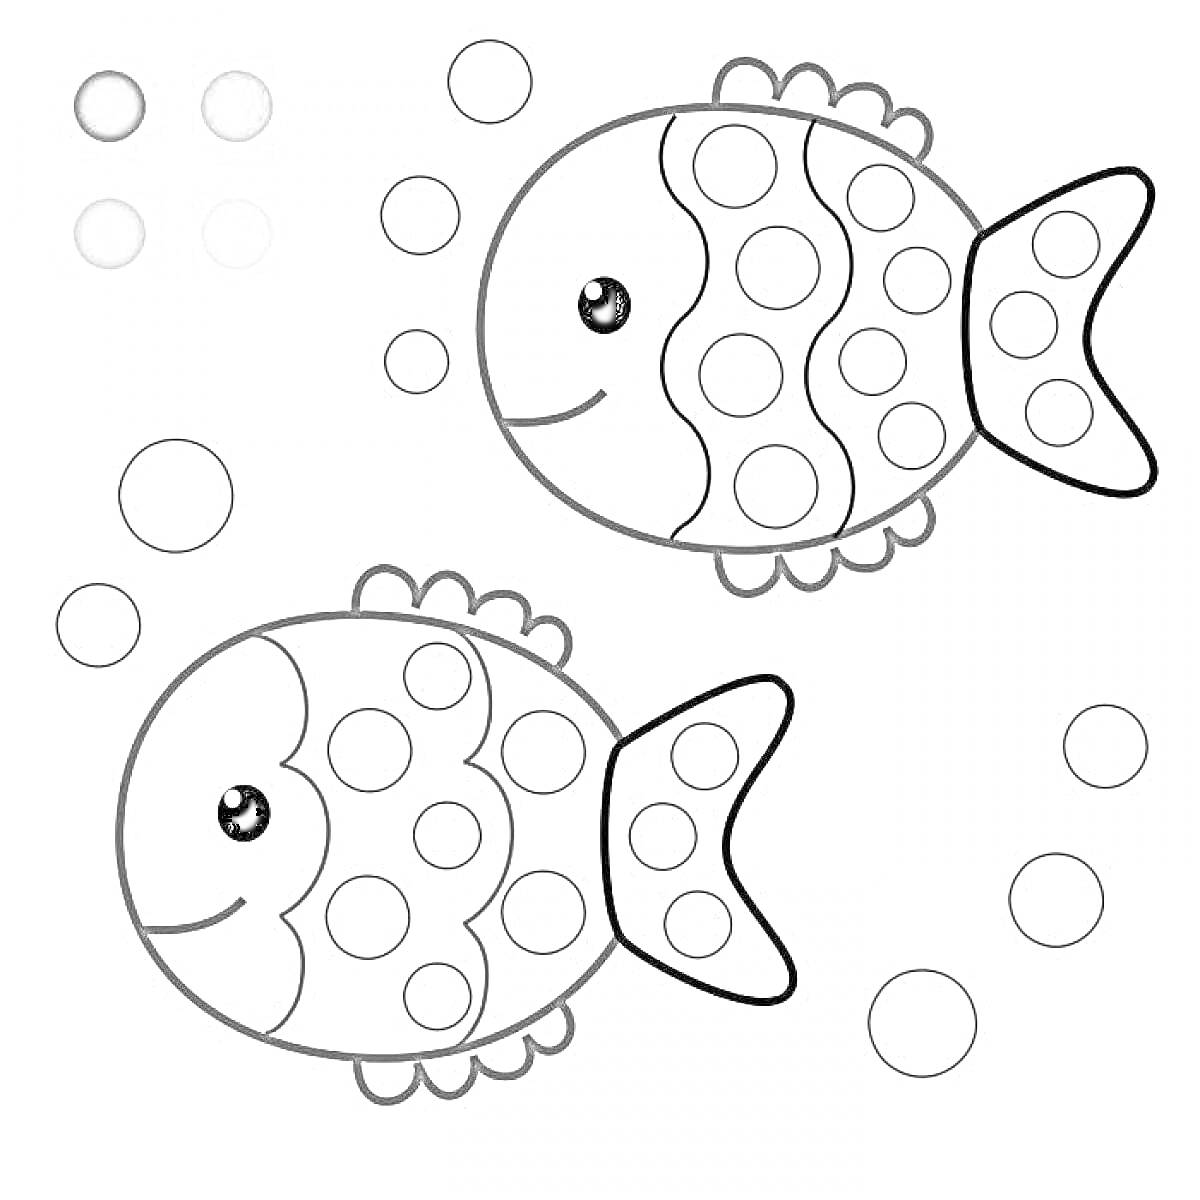 Рыбки с пузырьками и цветами для раскрашивания пальчиком (голубой, розовый, сиреневый, желтый)